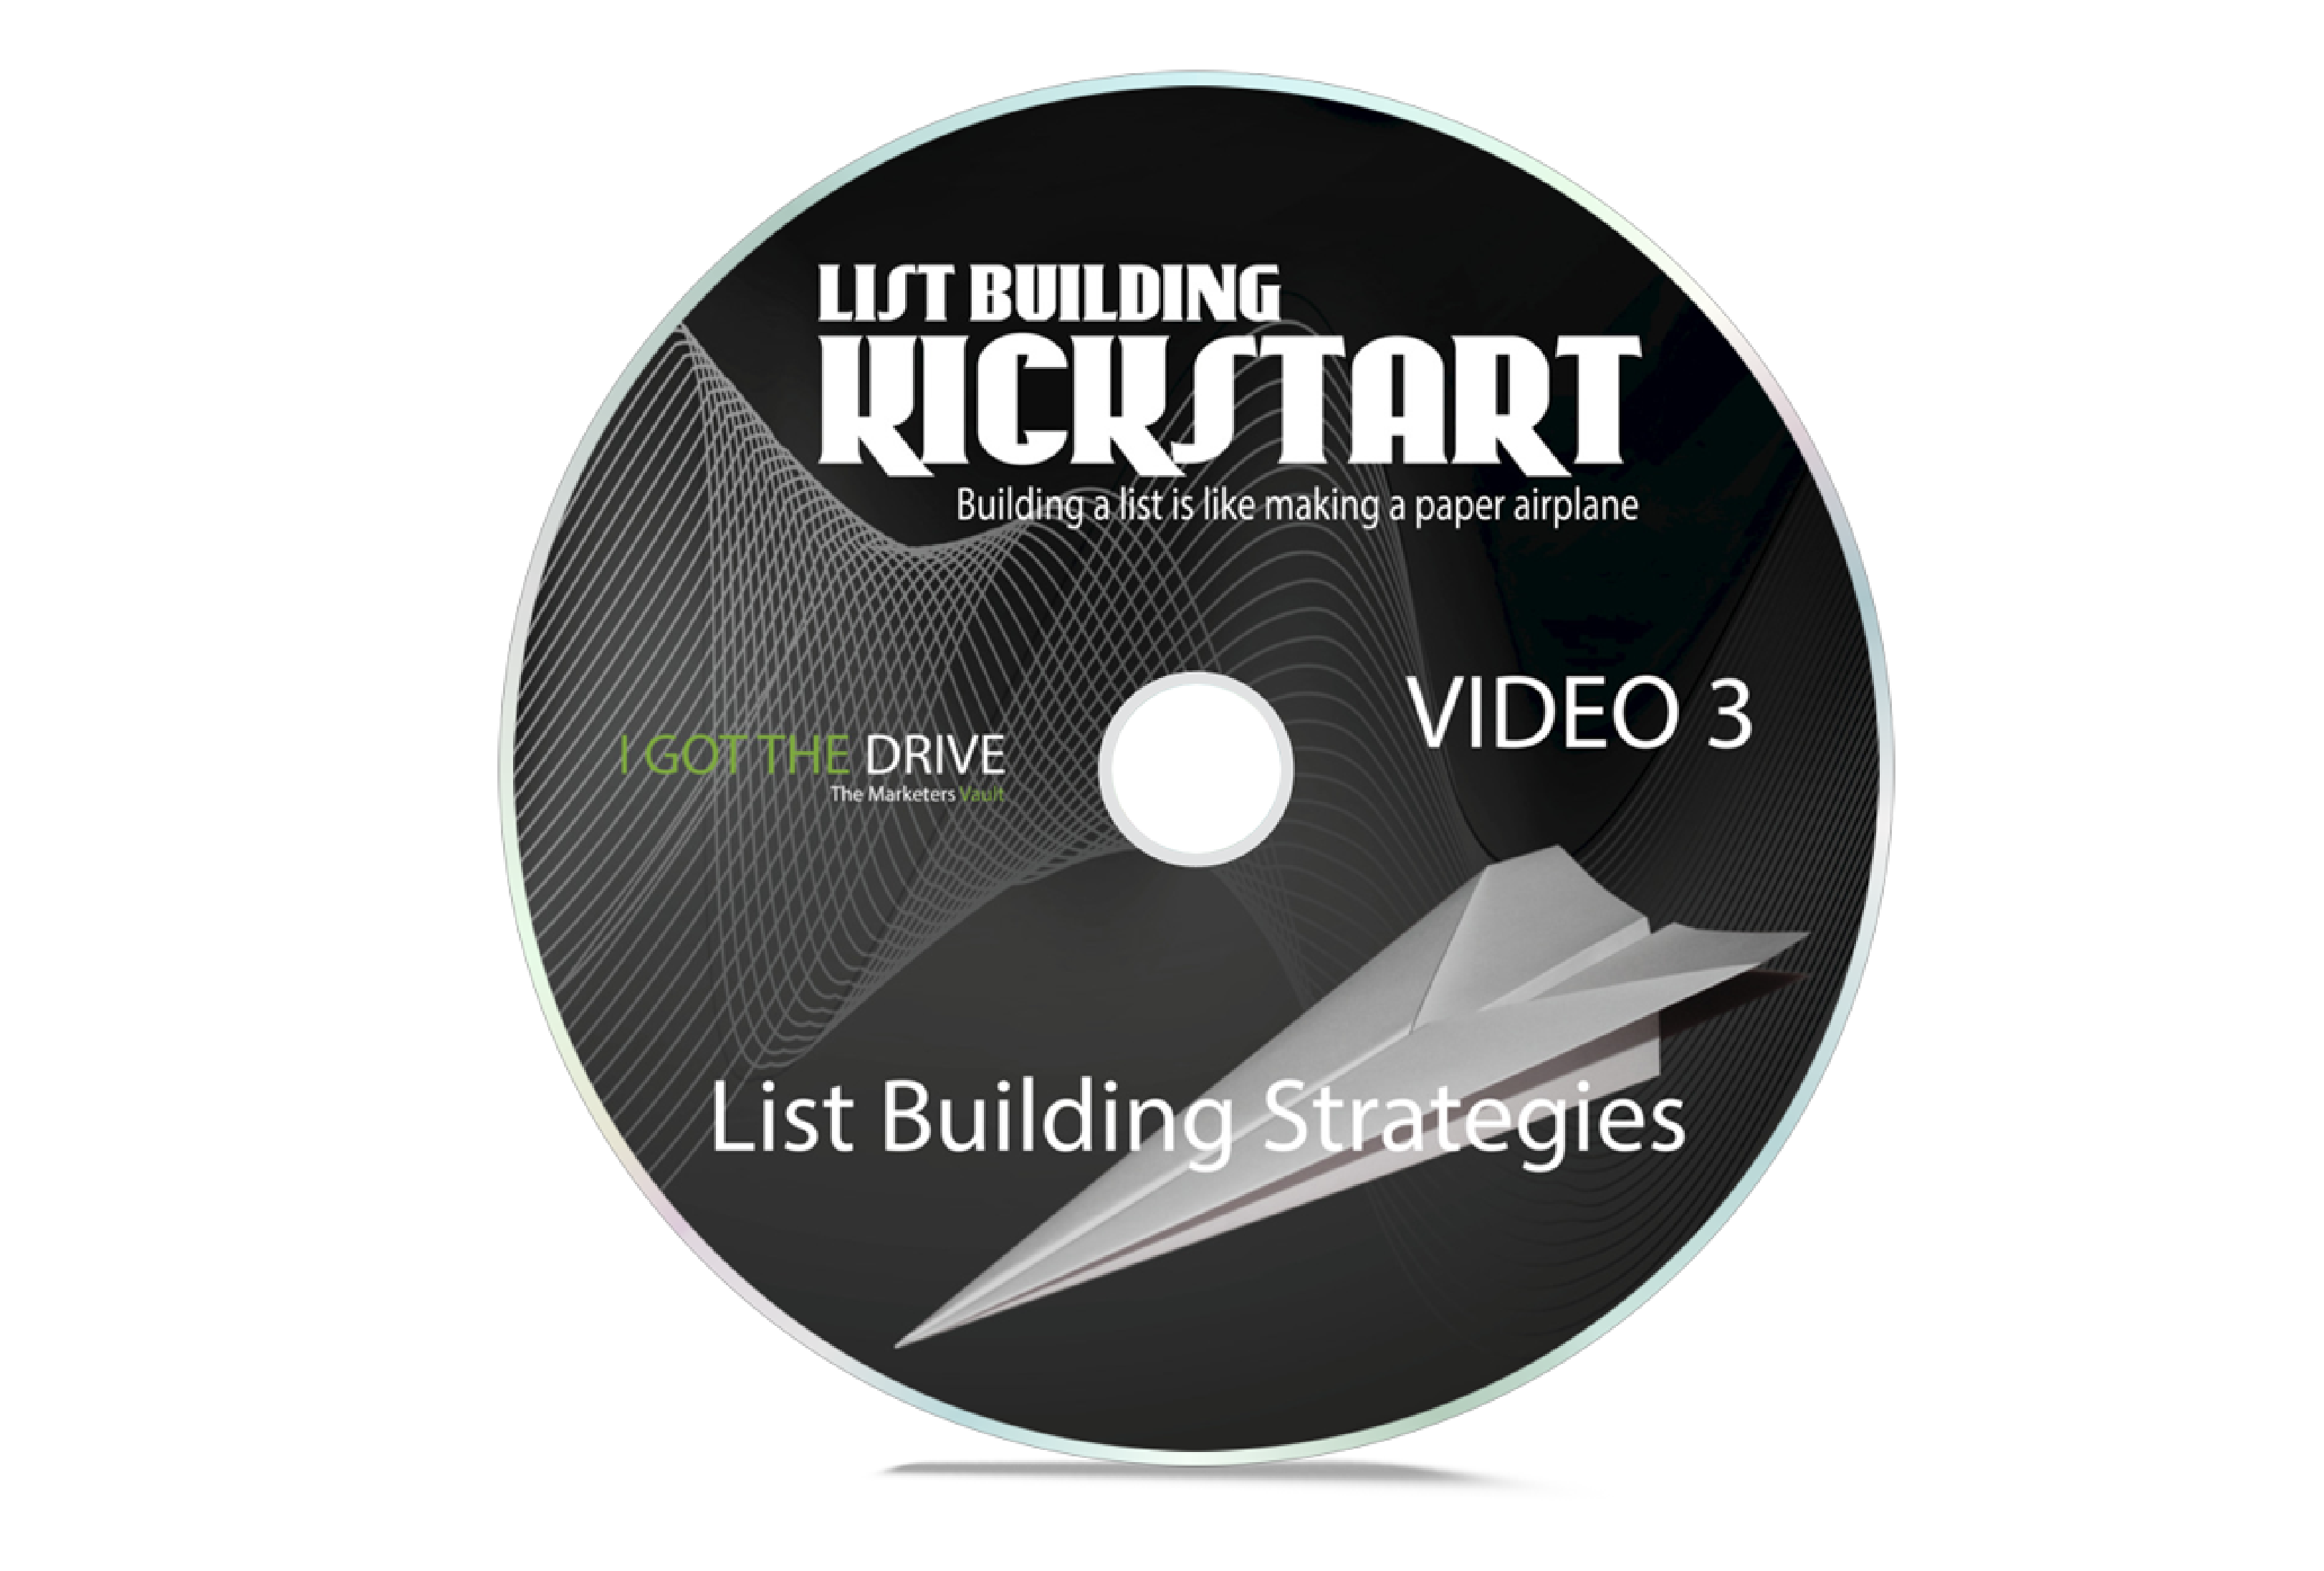 list building kickstart DVD 3